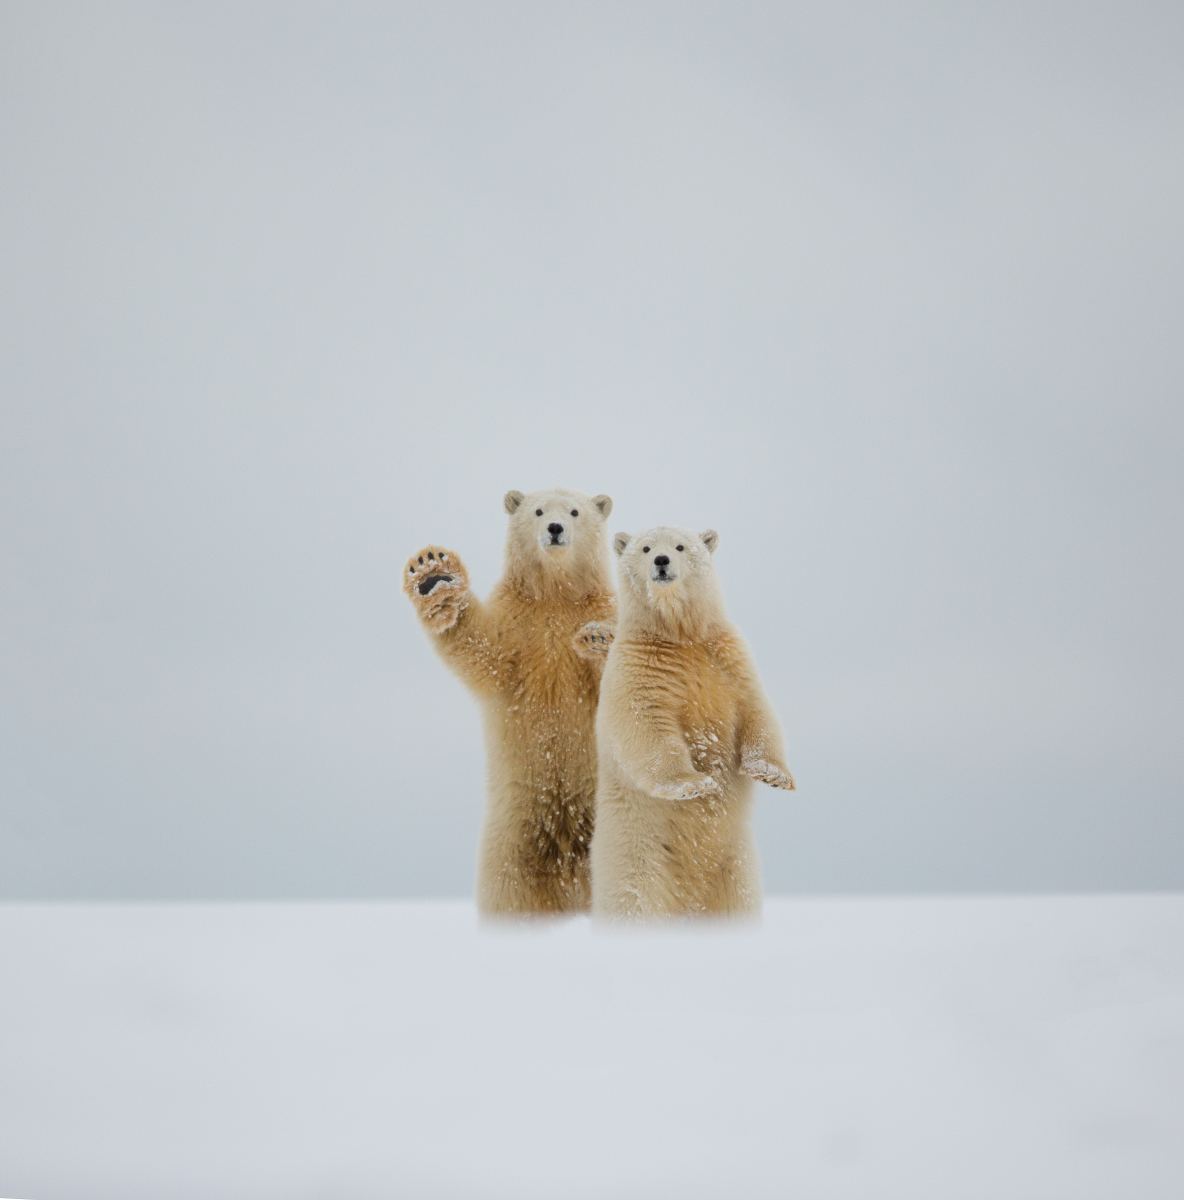 PHOTO: Polar bear gives friendly wave to camera